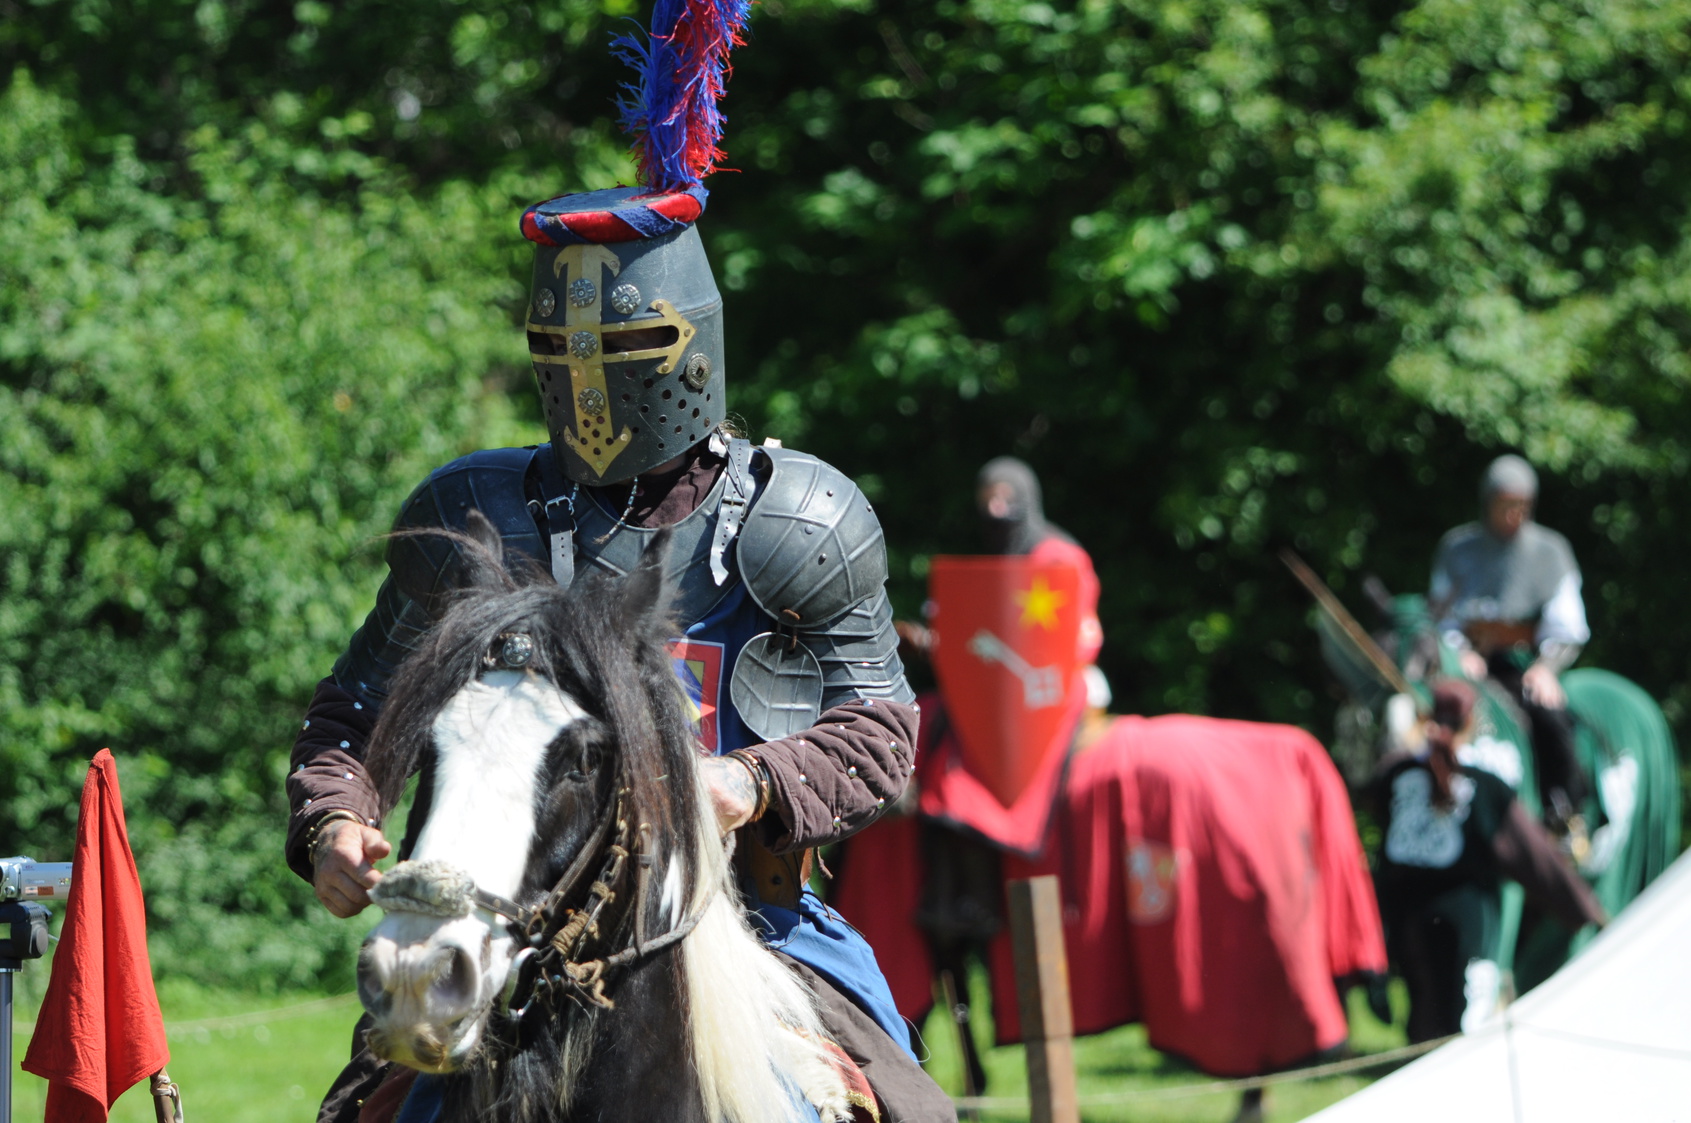 Au Moyen Âge, les tournois à cheval, très spectaculaires, étaient très prisés. © falpat86, fotolia